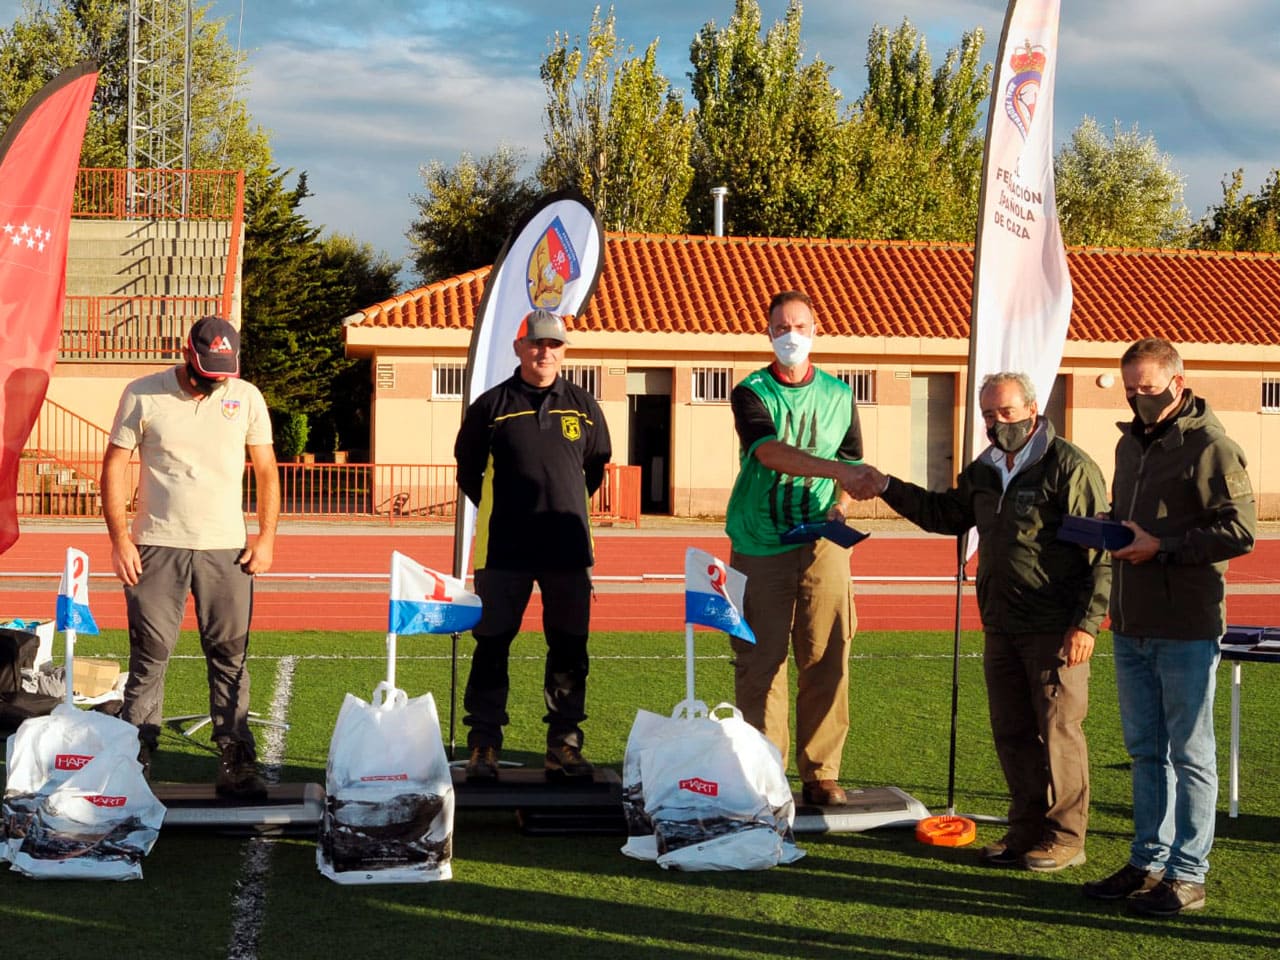 José Redondo en PCP, Francisco Marín en Pistón y Teresa Pereira en Damas, campeones de España de Field Target 2021